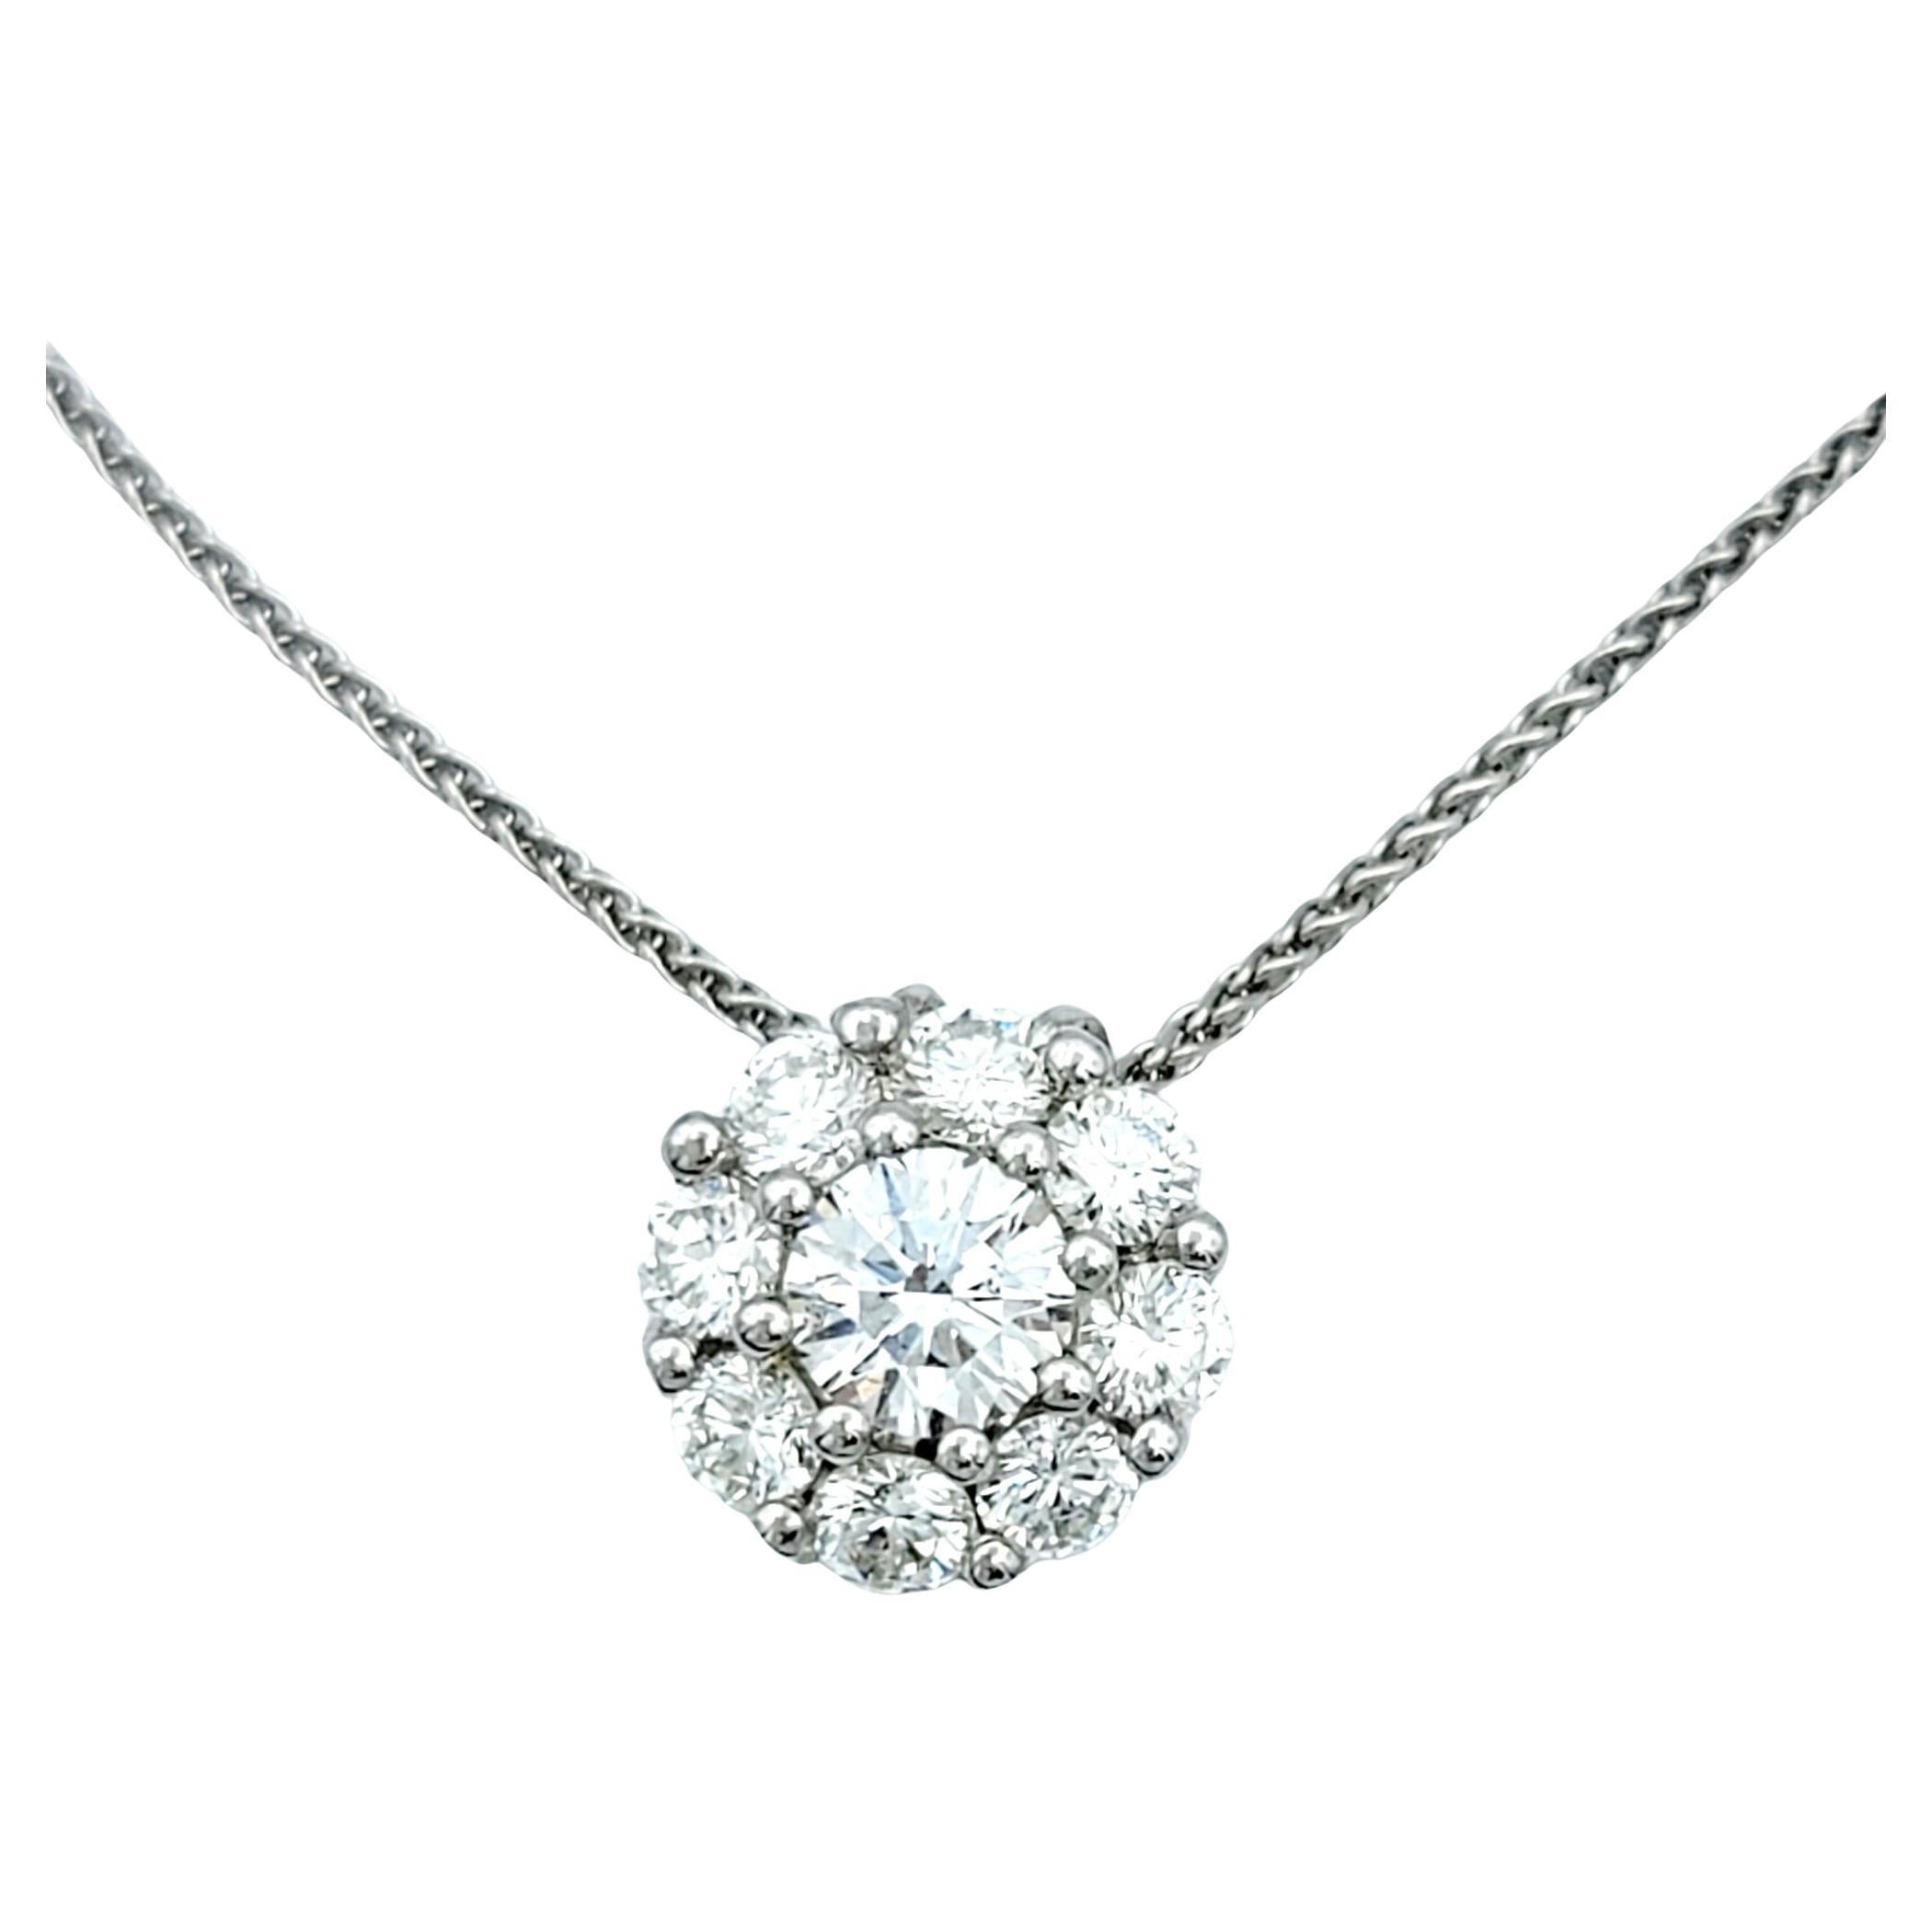 Ce collier de diamants au design à la fois exquis et simple est une merveille absolue. Le pendentif comporte un diamant central rond, entouré d'un plus petit halo de diamants ronds, créant ainsi une magnifique forme de fleur miniature. 

La pièce